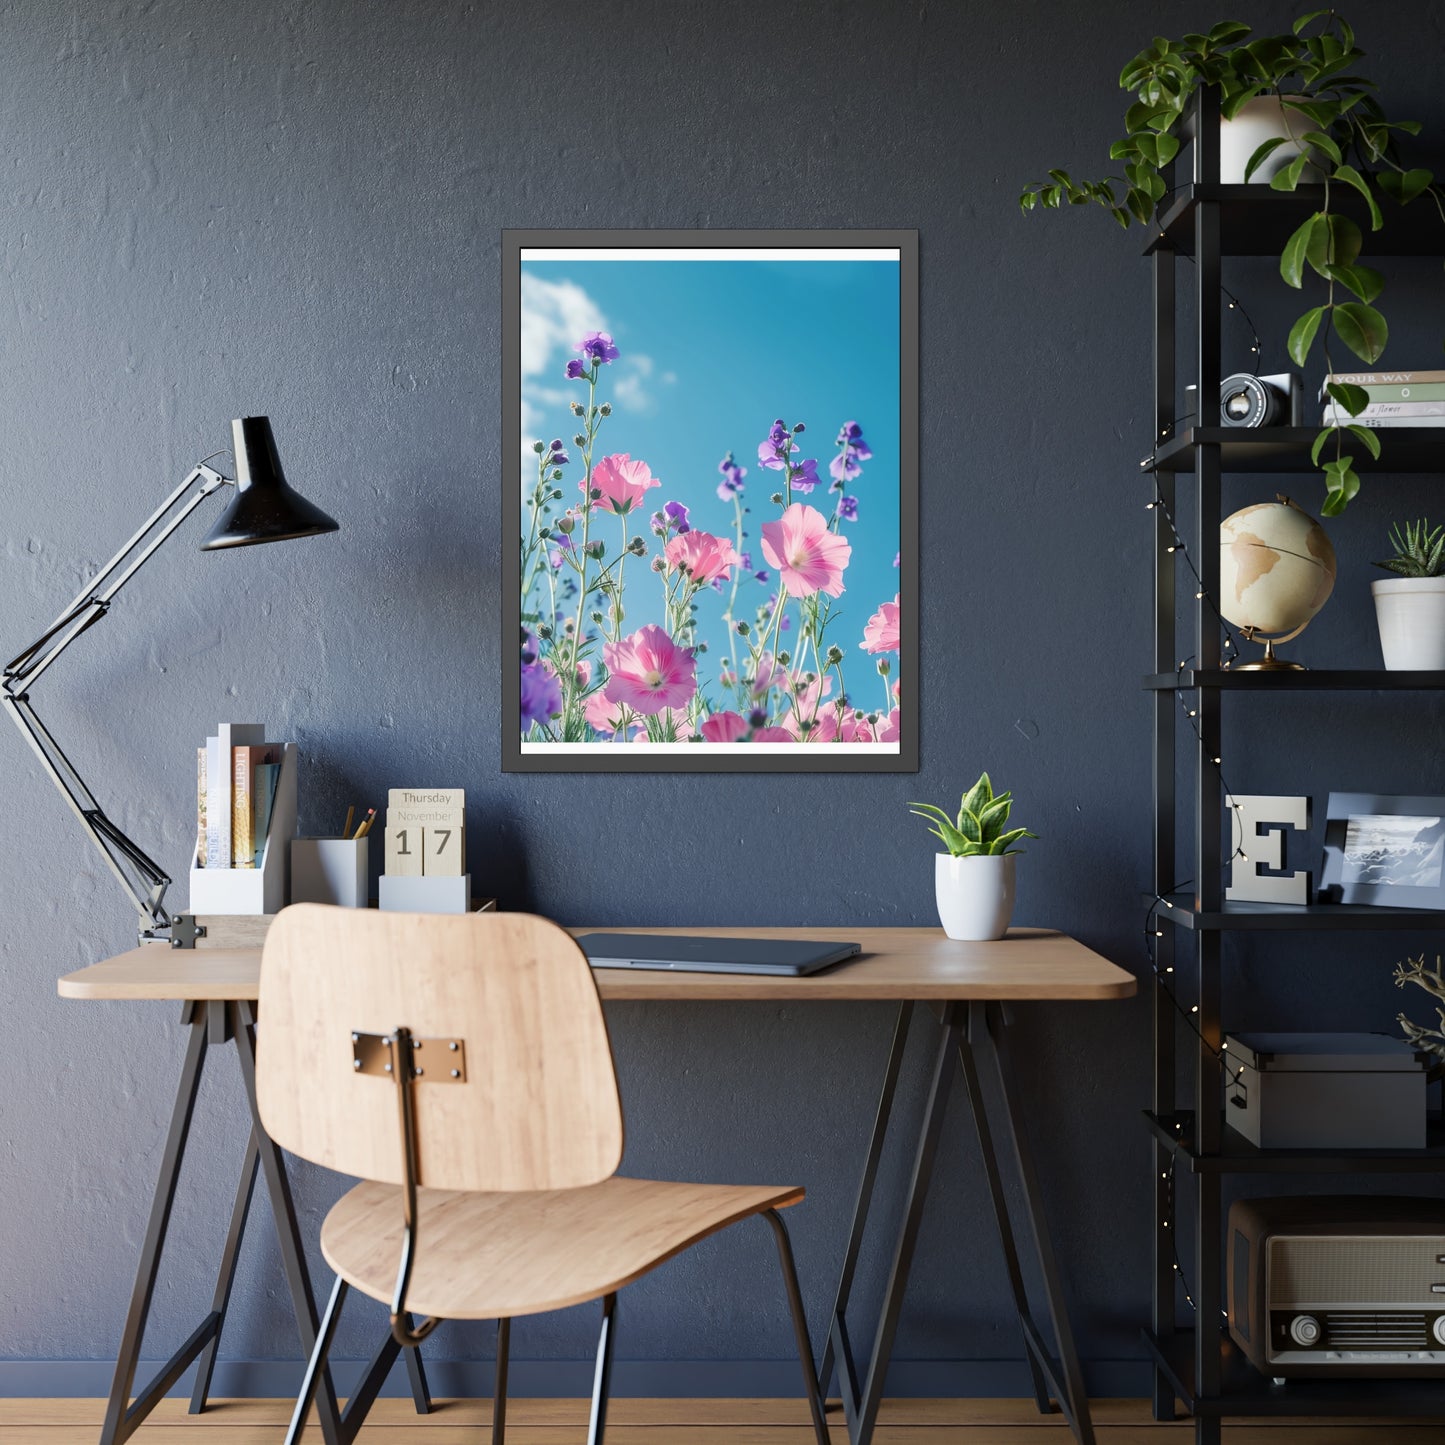 Pink & Lavender Spring Flowers Framed Paper Posters